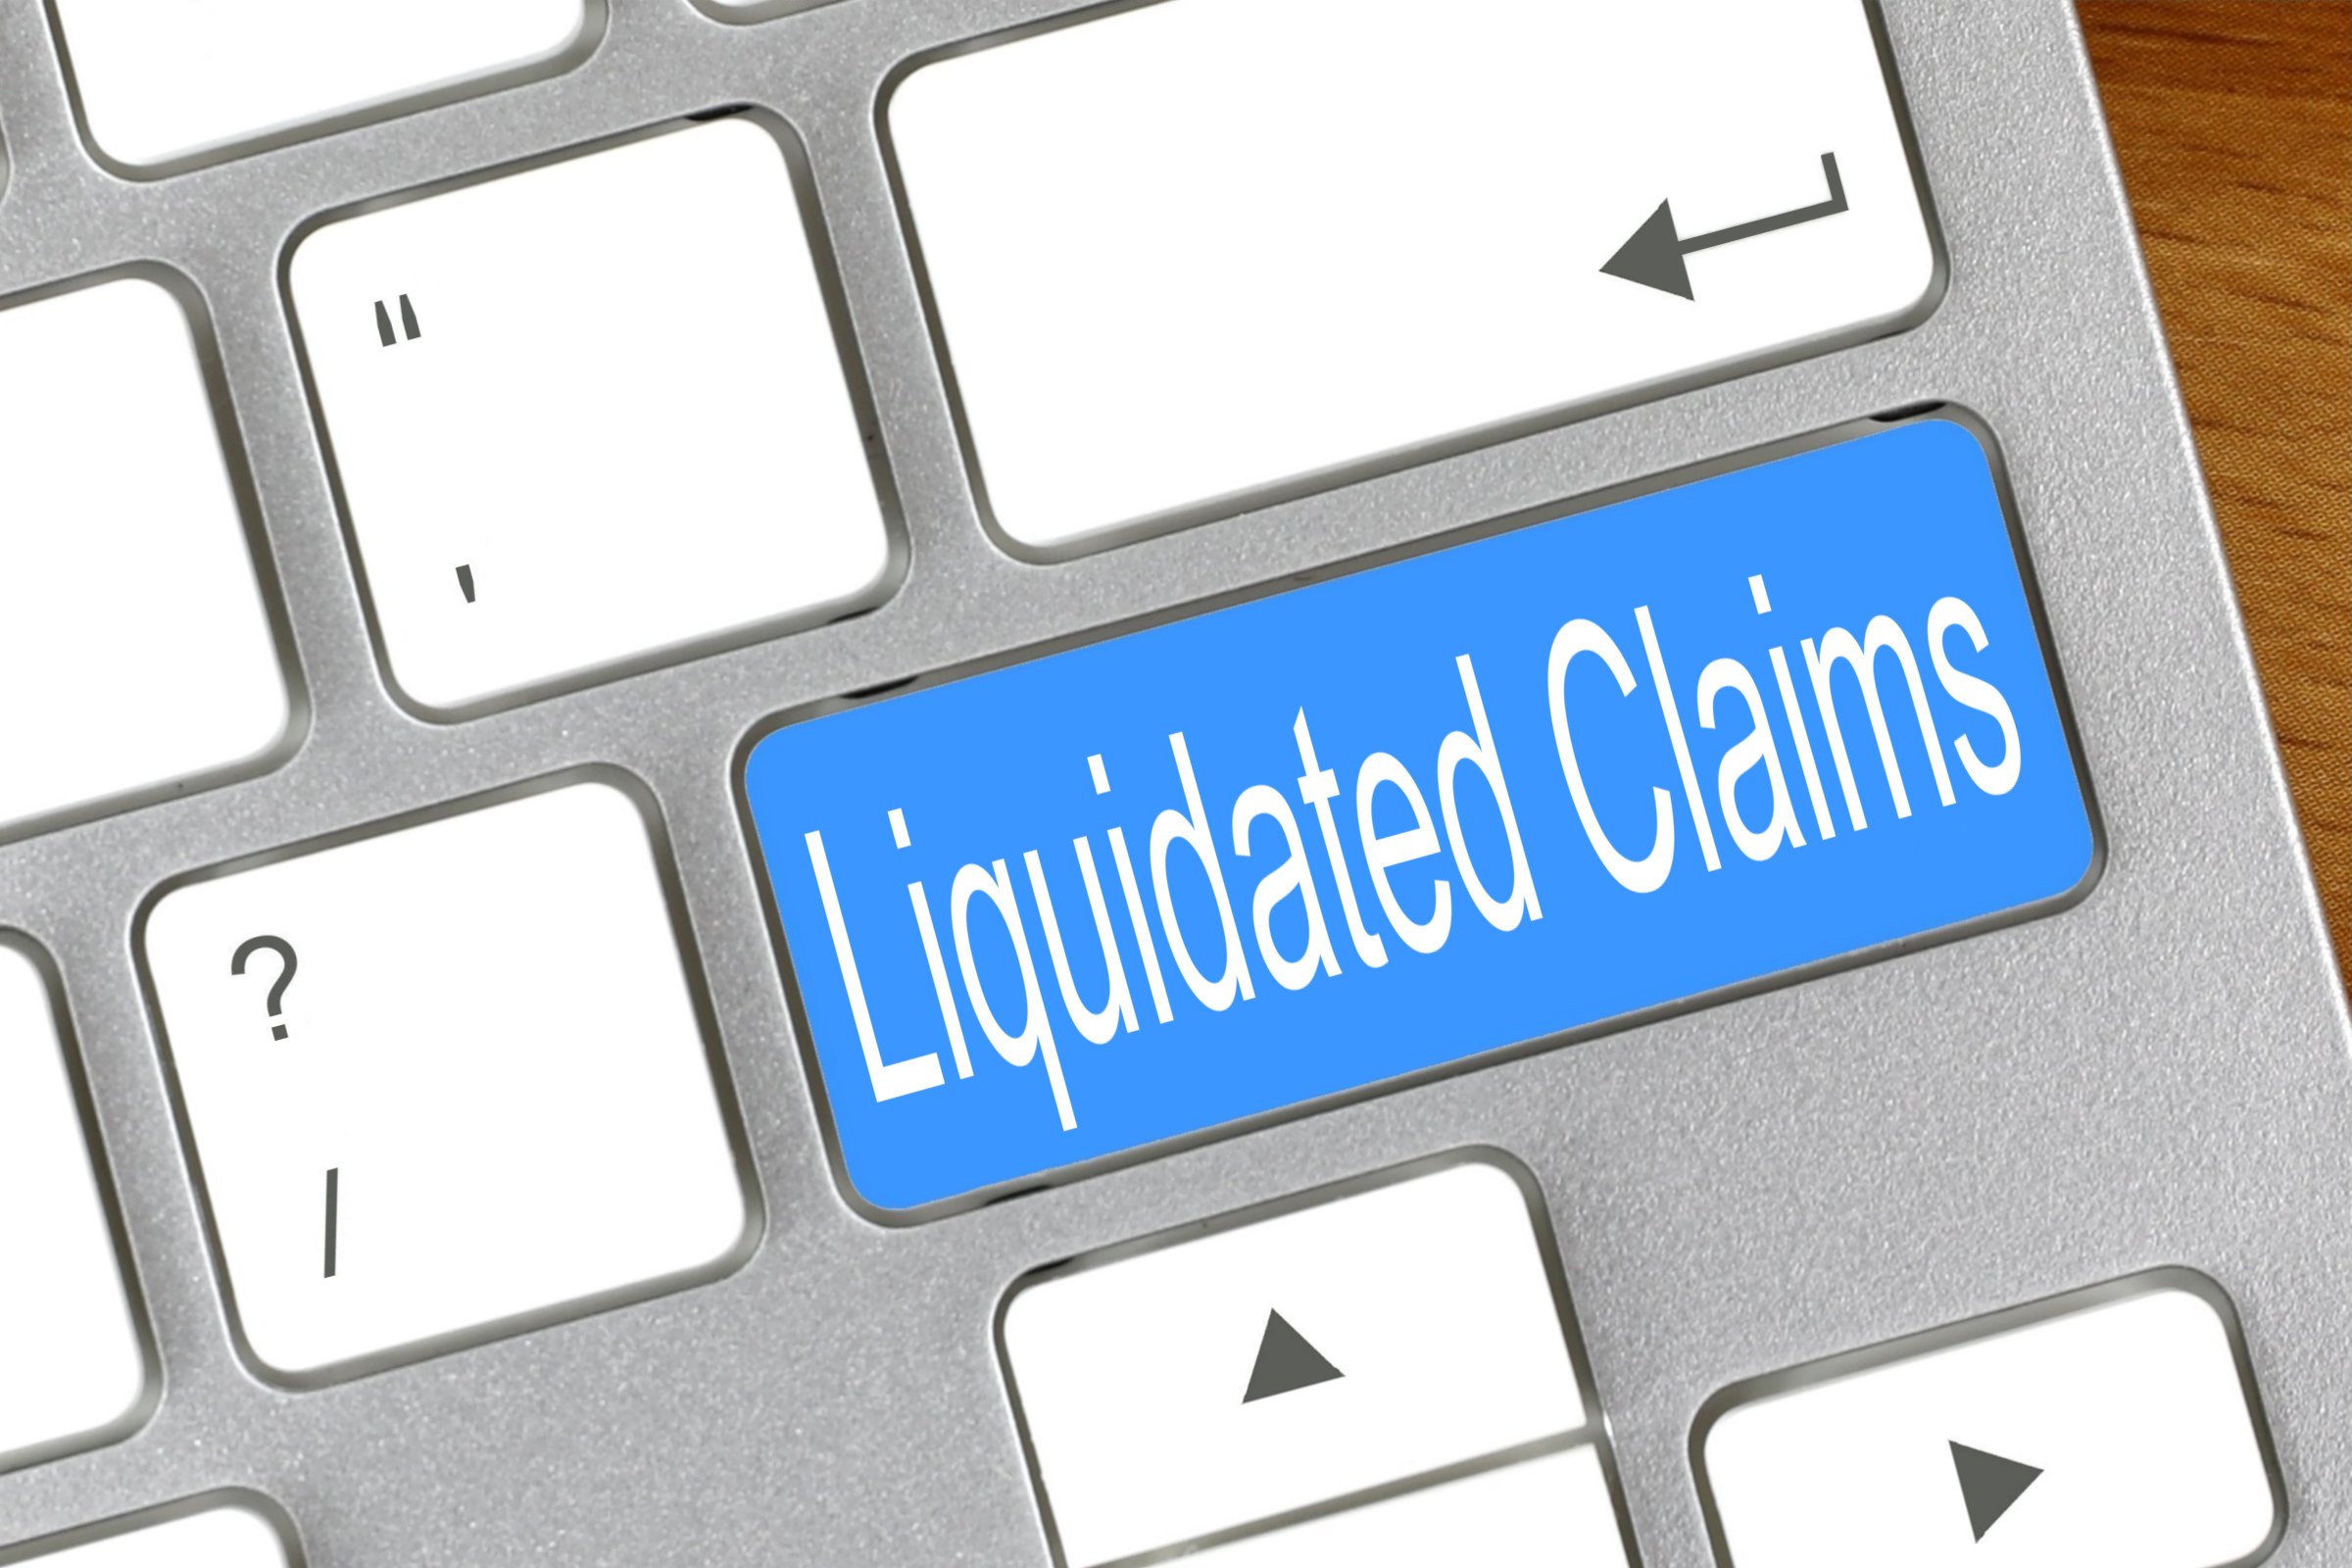 liquidated claims